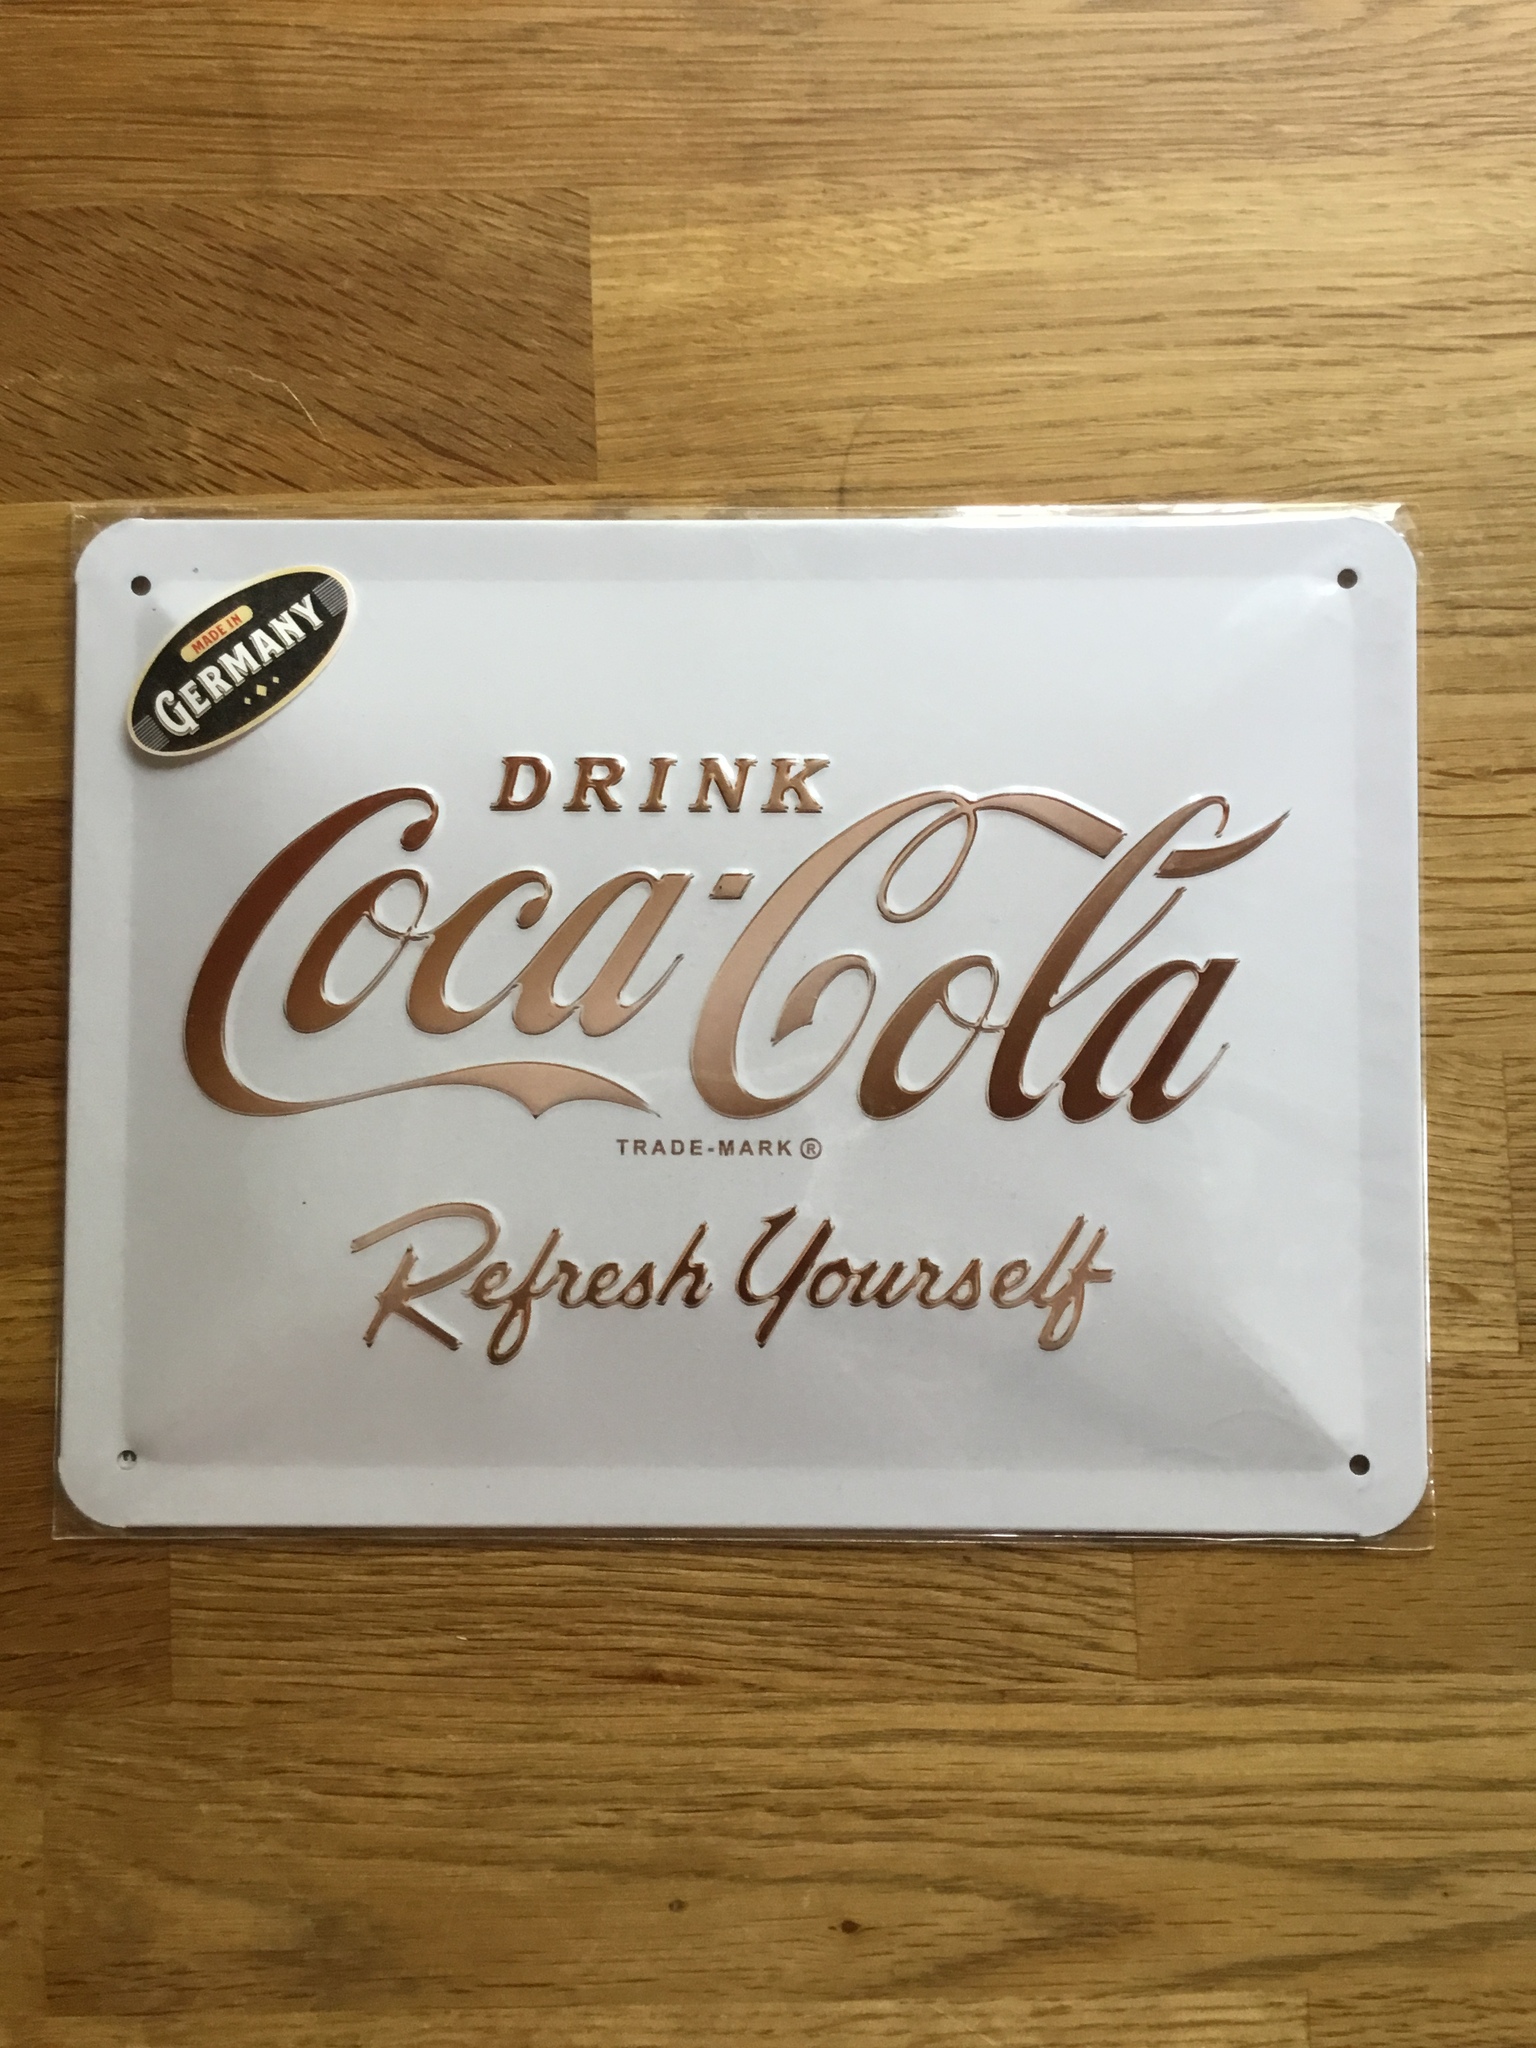 Coca cola refresh yourself